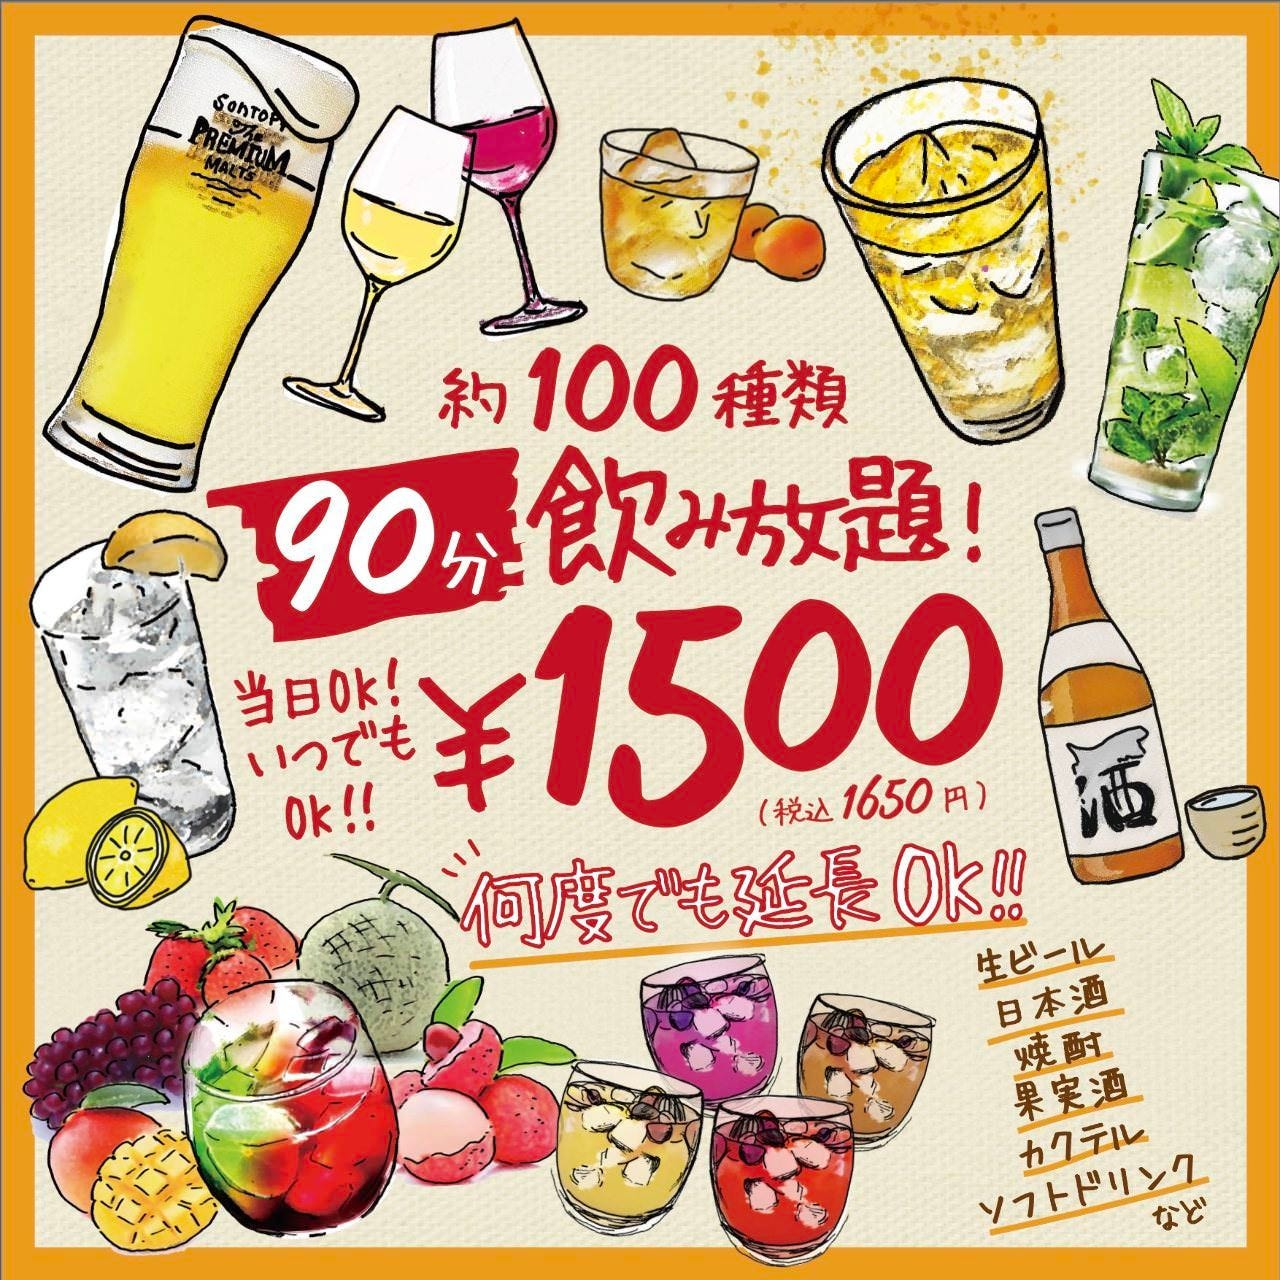 1650円で120種類以上の飲み放題もご利用できます。